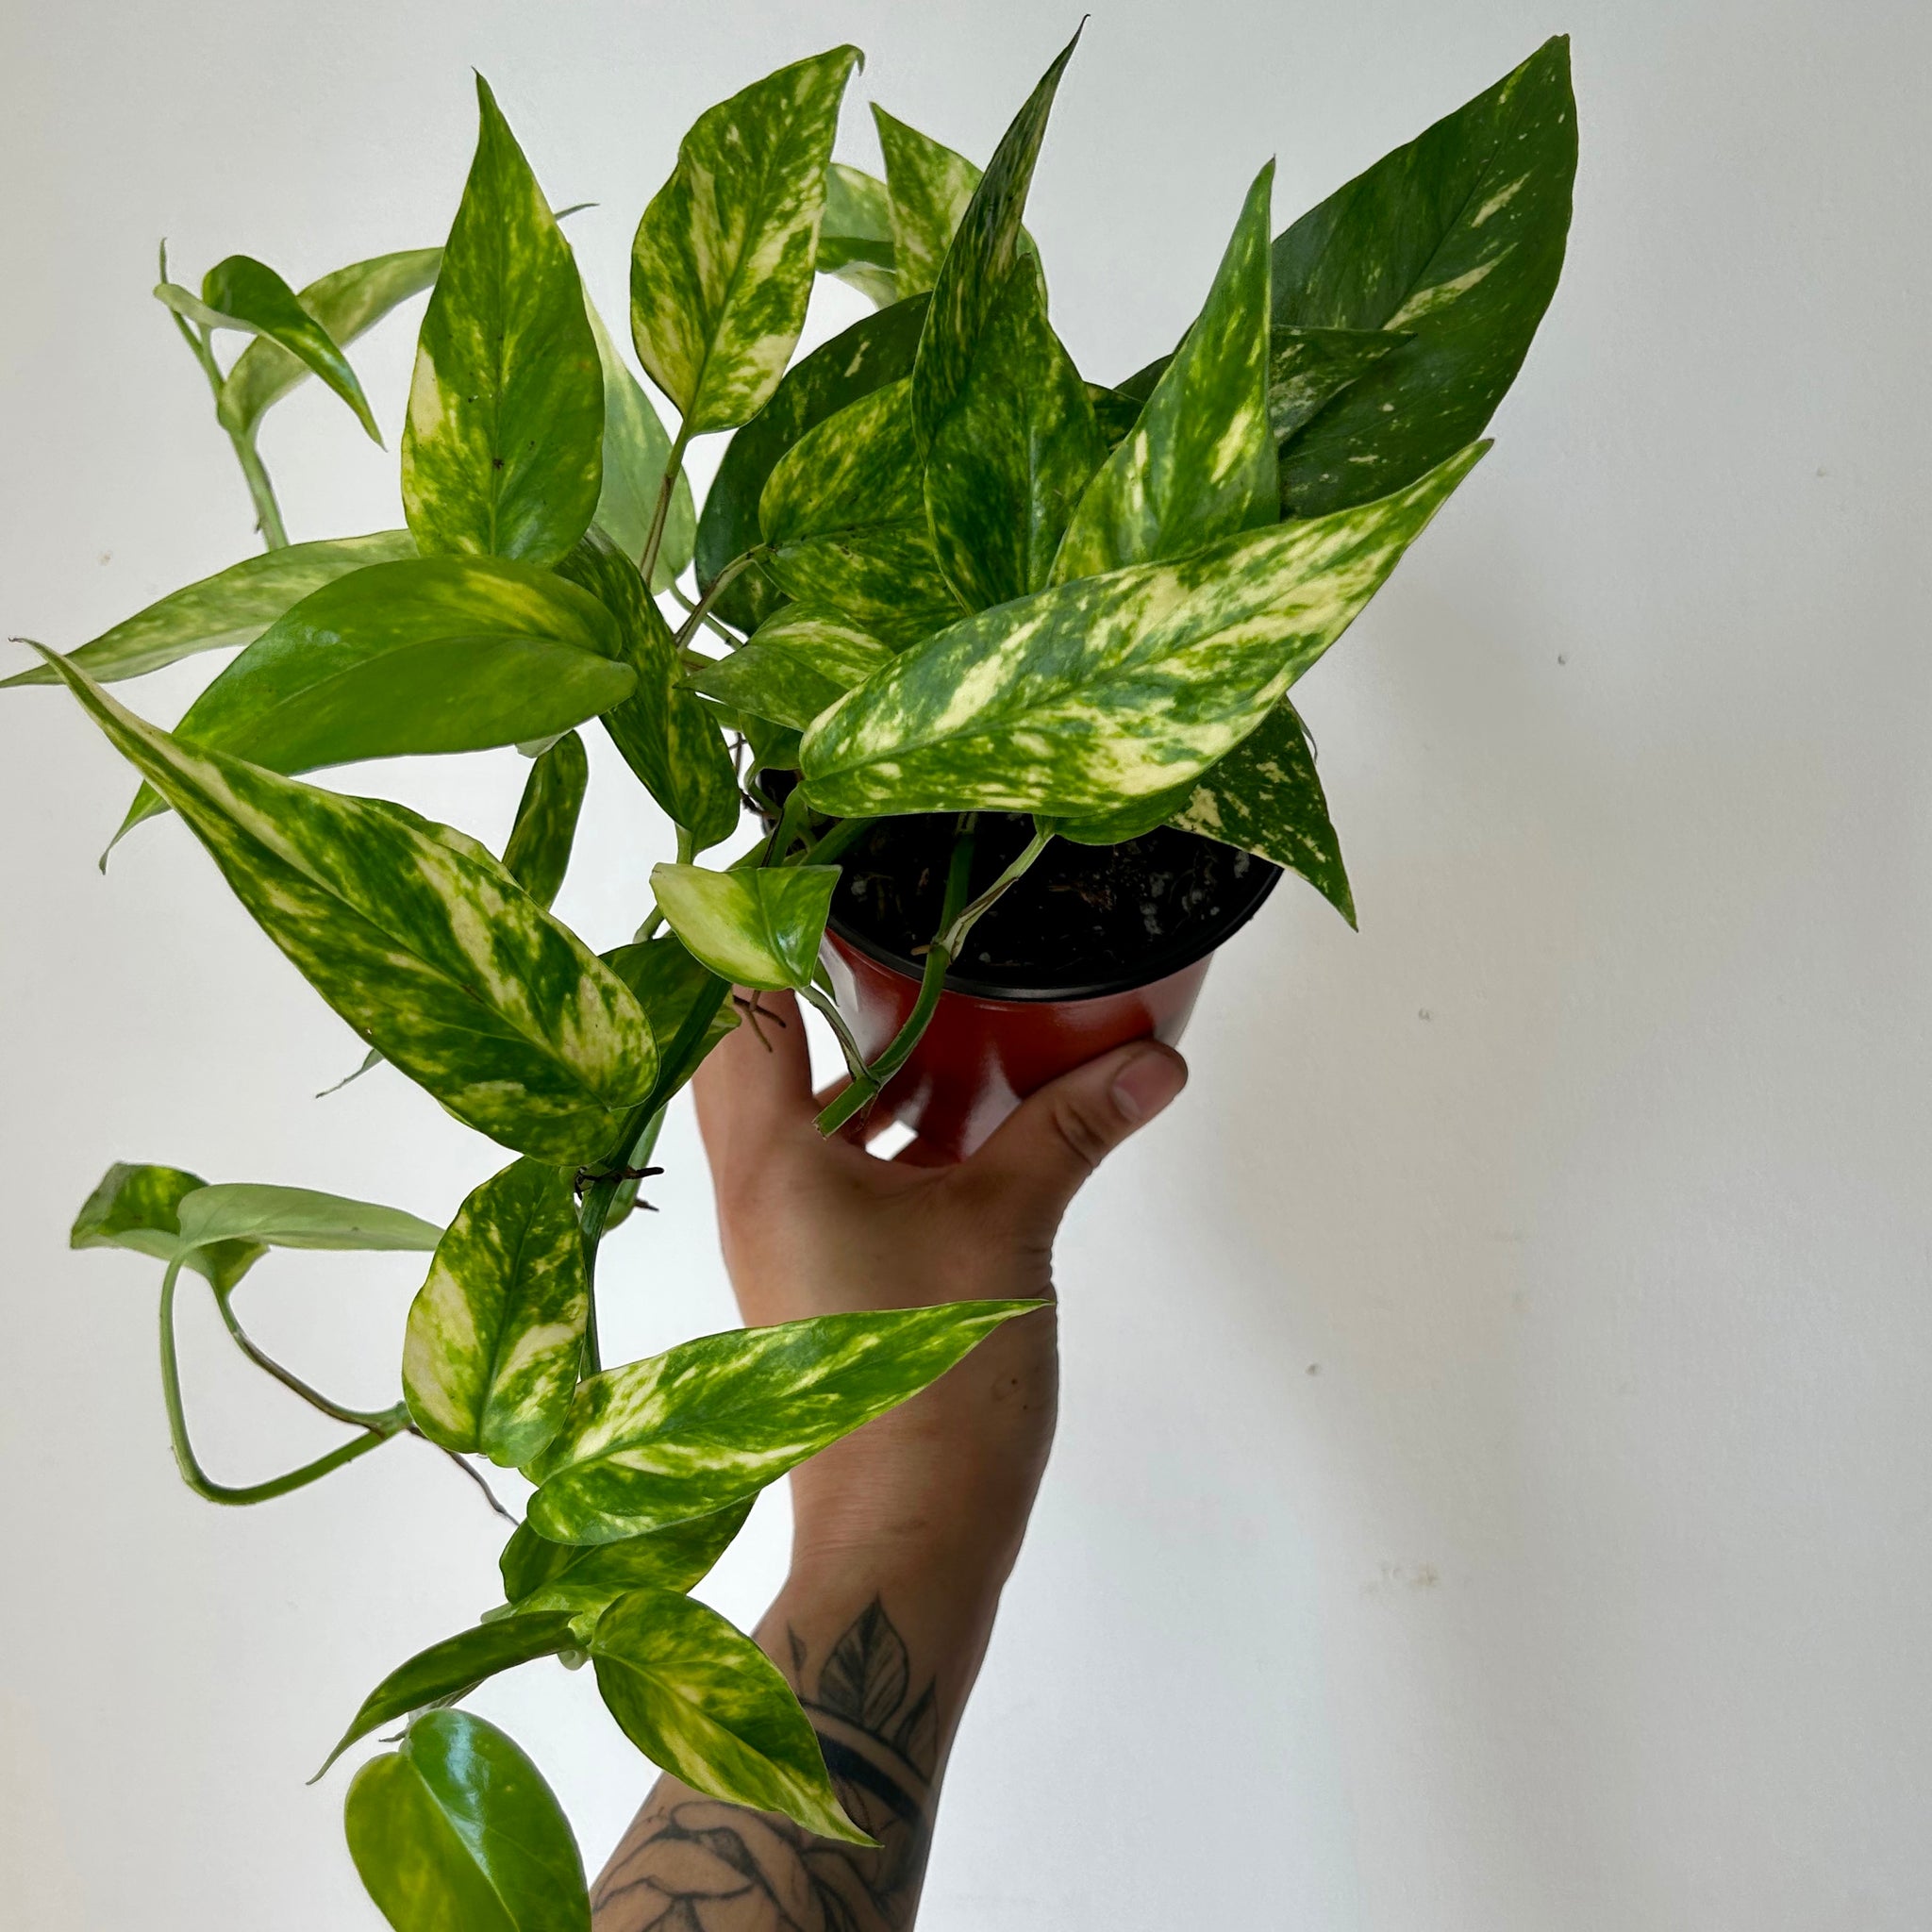 Unfurling Epipremnum pinnatum aurea variegata leaf : r/houseplants